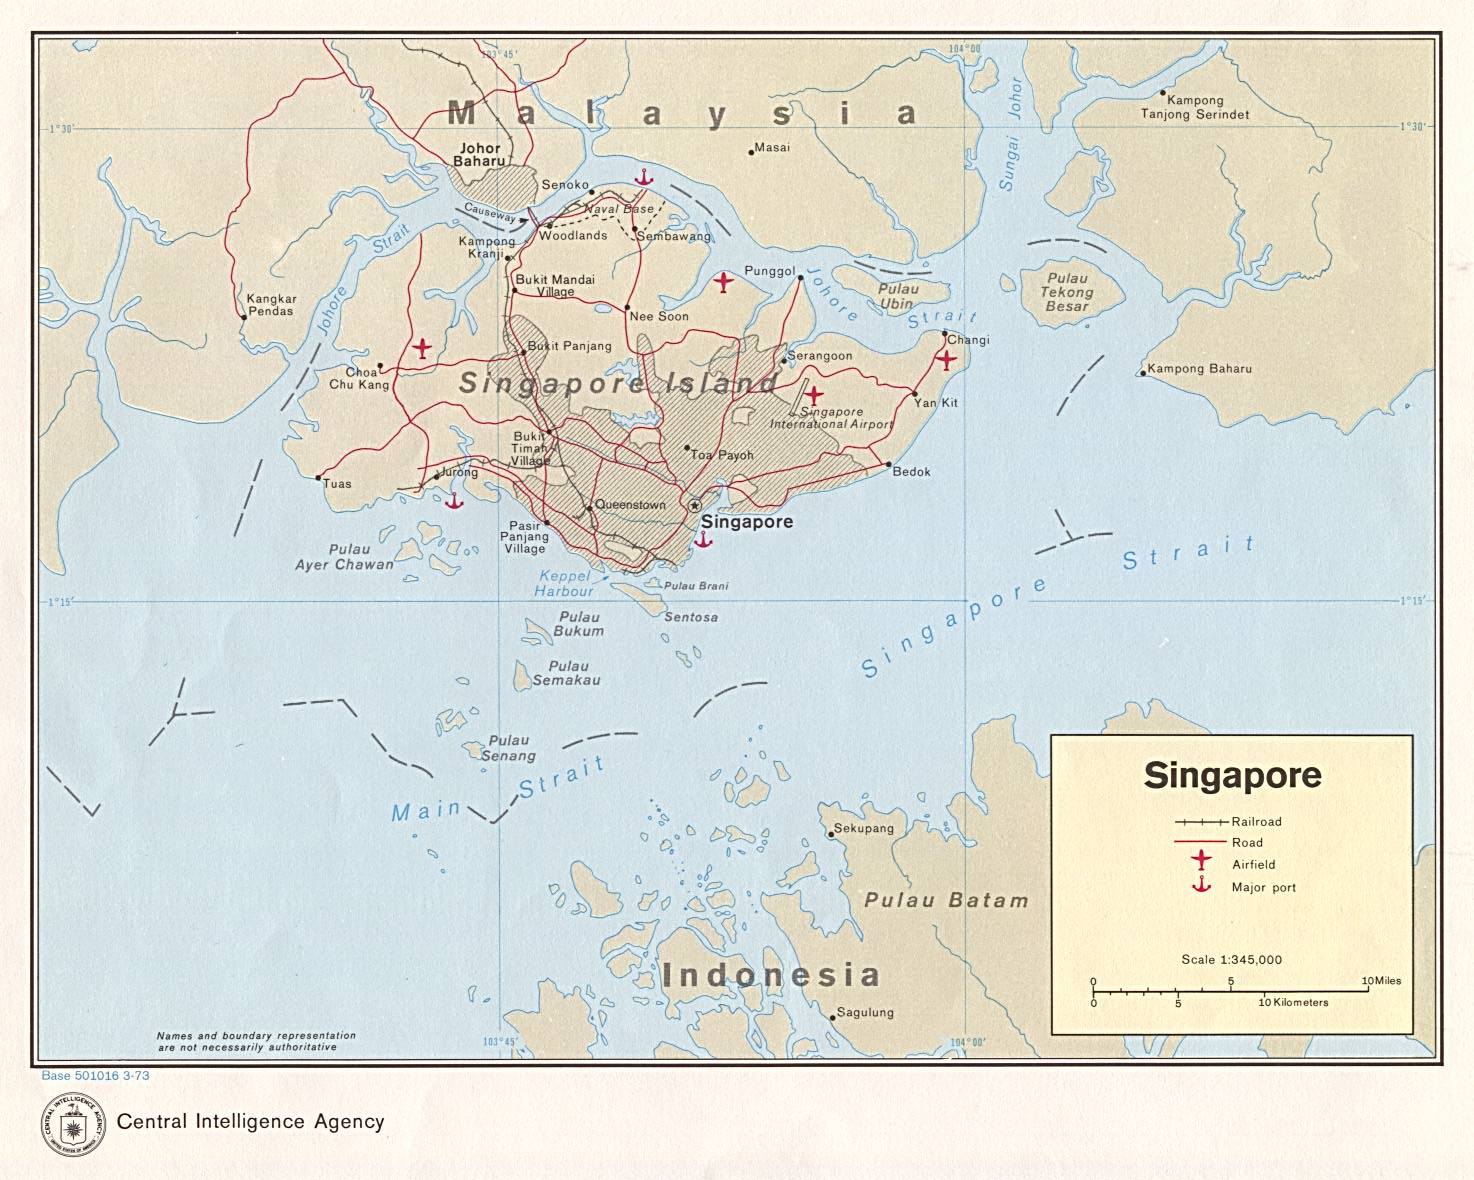 新加坡旅游地图: 新加坡的景点和古迹